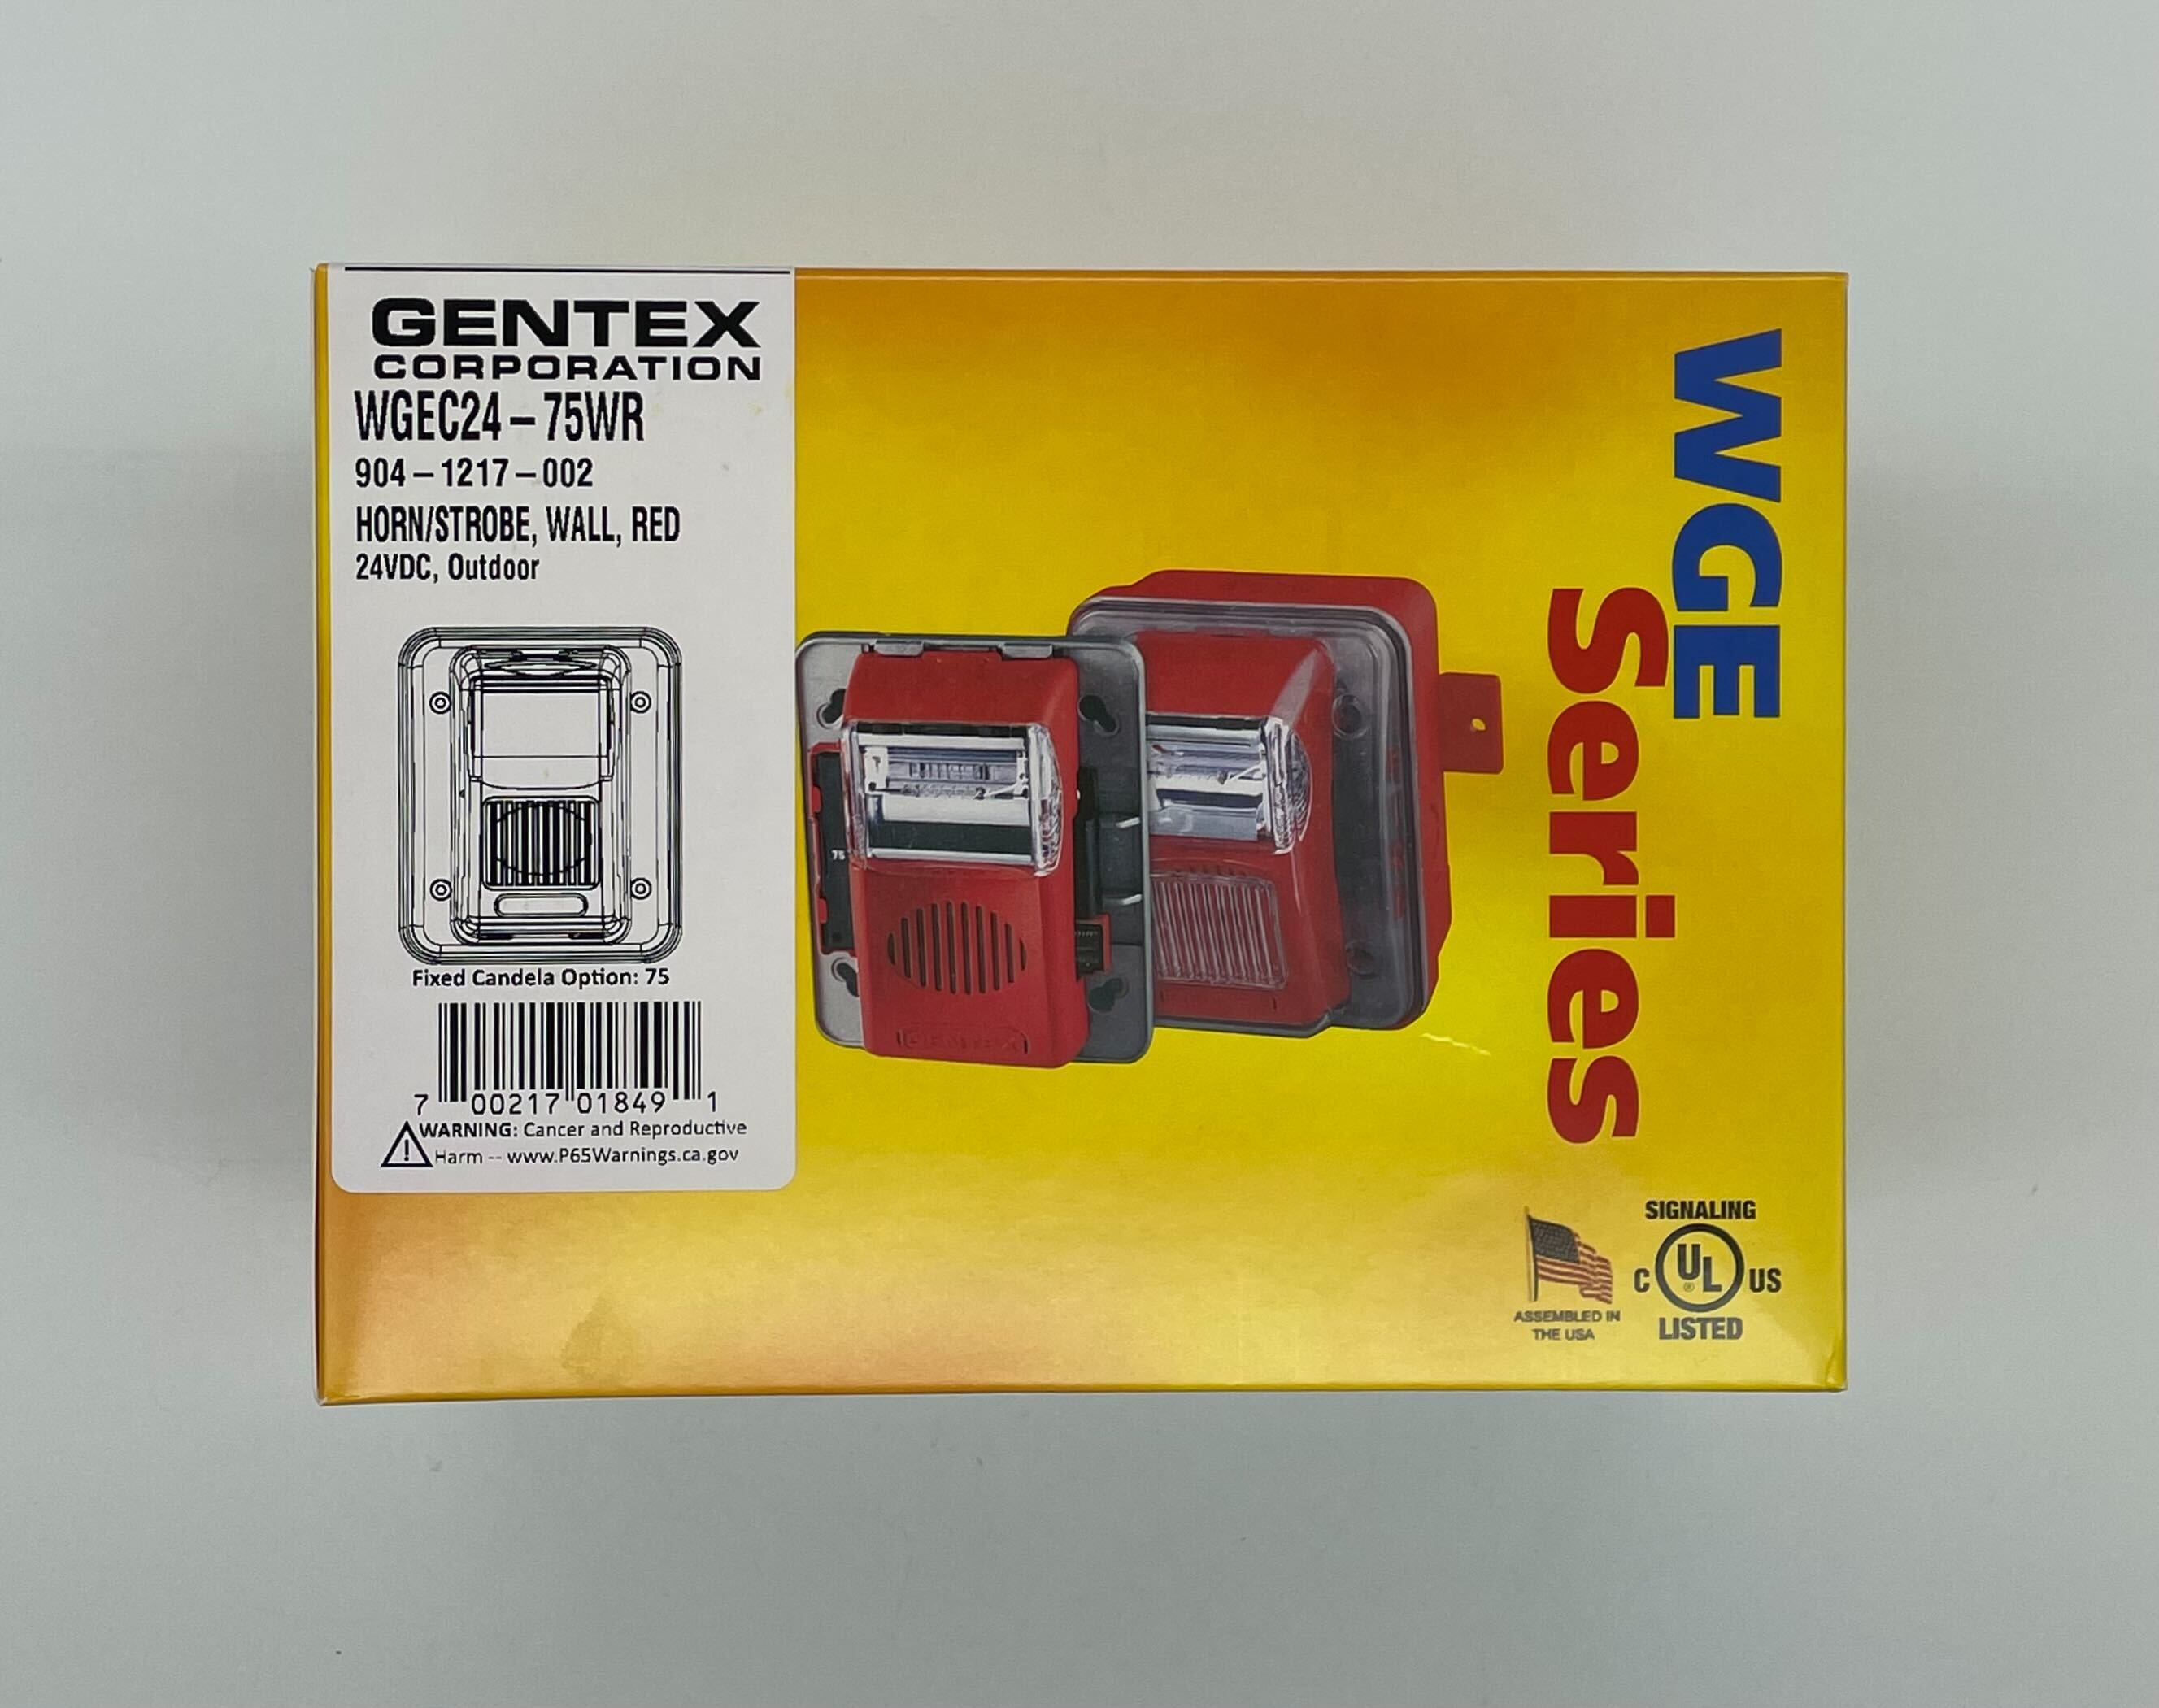 Gentex WGEC24-75WR